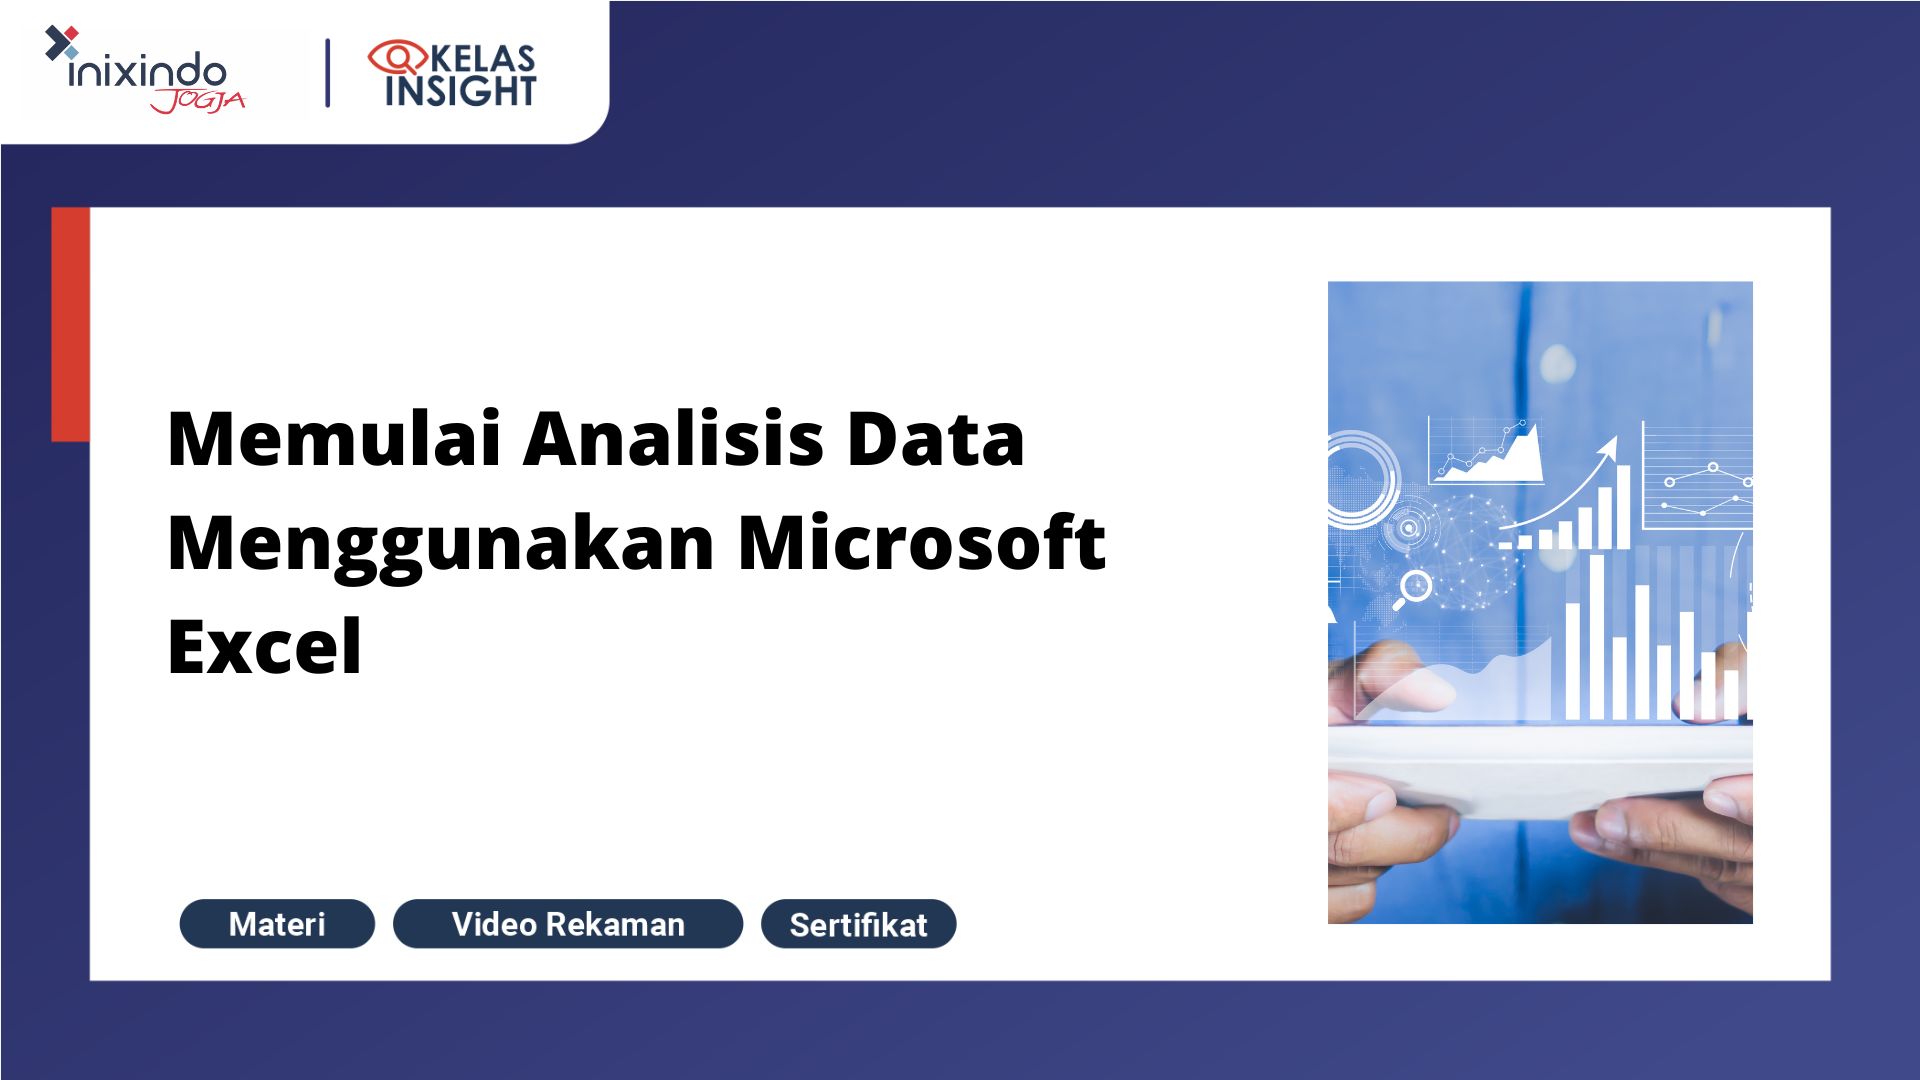 Webinar Memulai Analisis Data Menggunakan Microsoft Excel 1